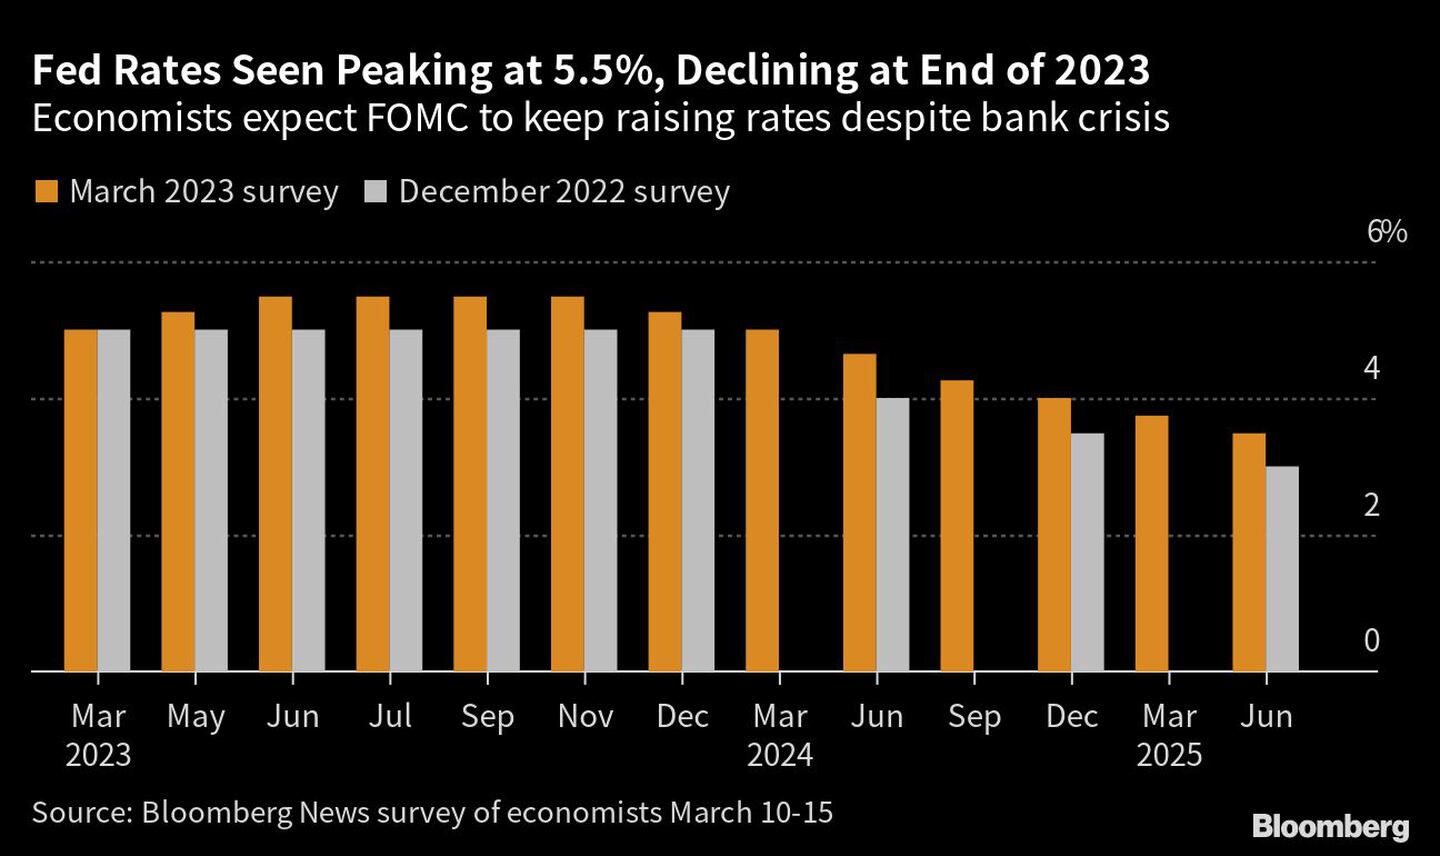  Los economistas prevén que el FOMC siga subiendo las tasas pese a la crisis bancariadfd